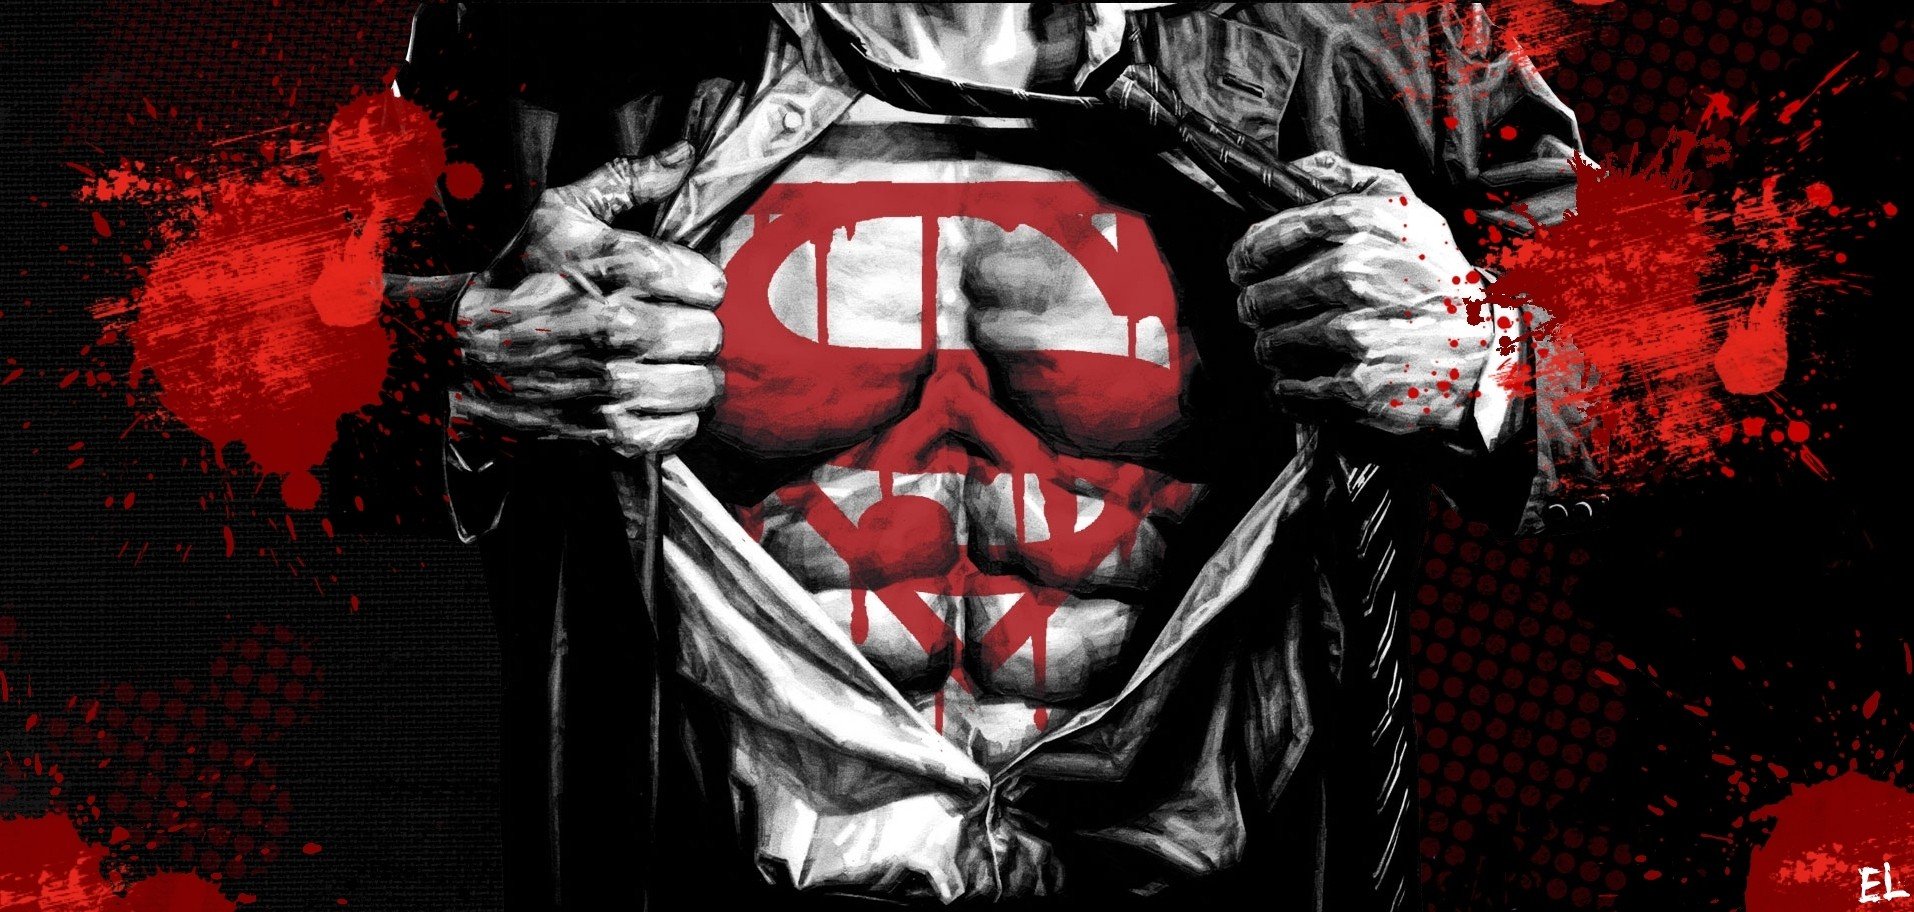 Download Gambar Black and Red Hd Wallpaper of Superman terbaru 2020